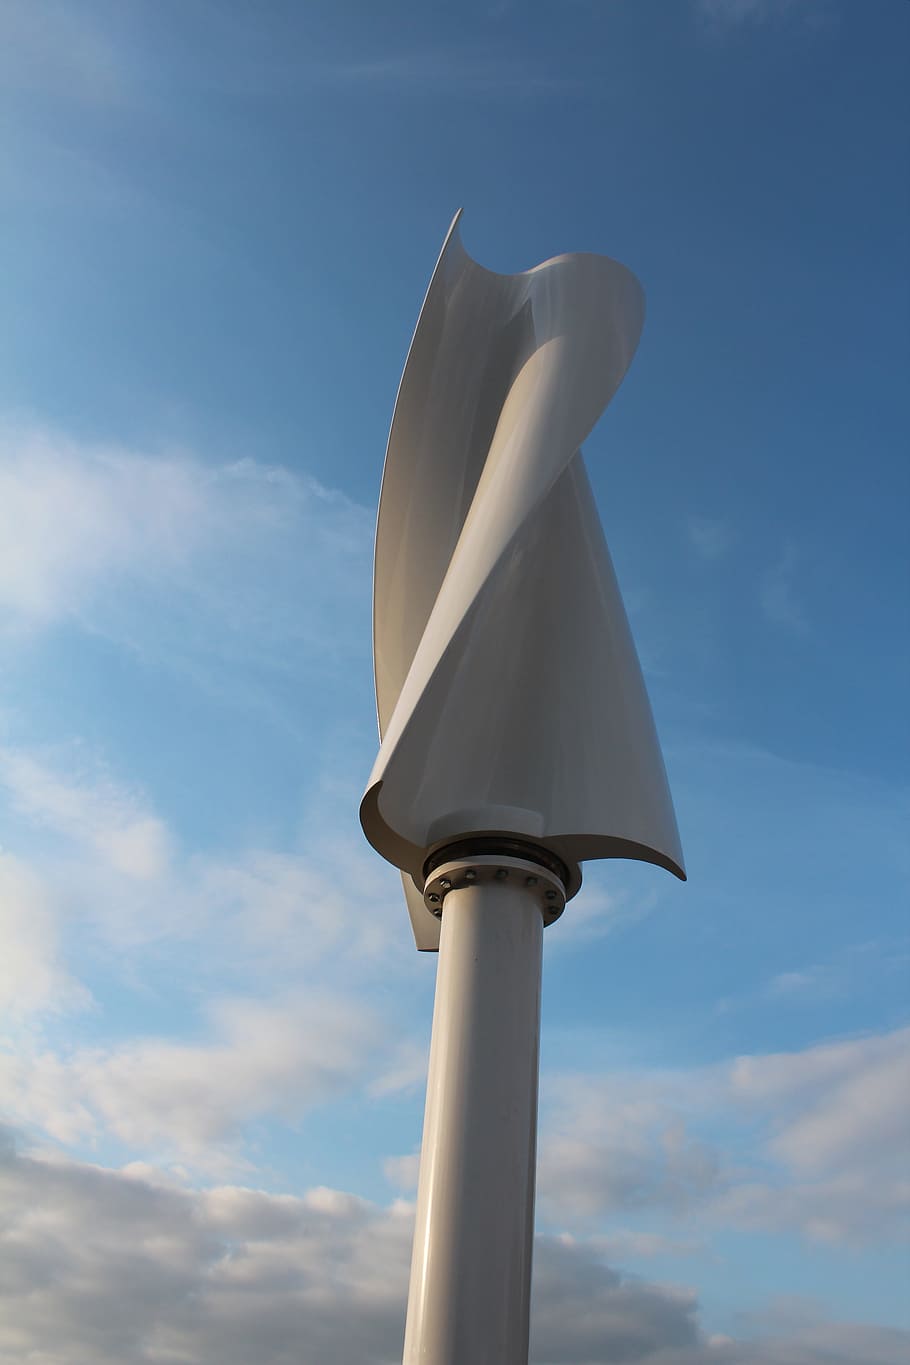 サボニウスローター, 垂直風力タービン, 広告風システム, 空, 雲-空, 低角度のビュー, 人なし, 日, 自然, 建造物